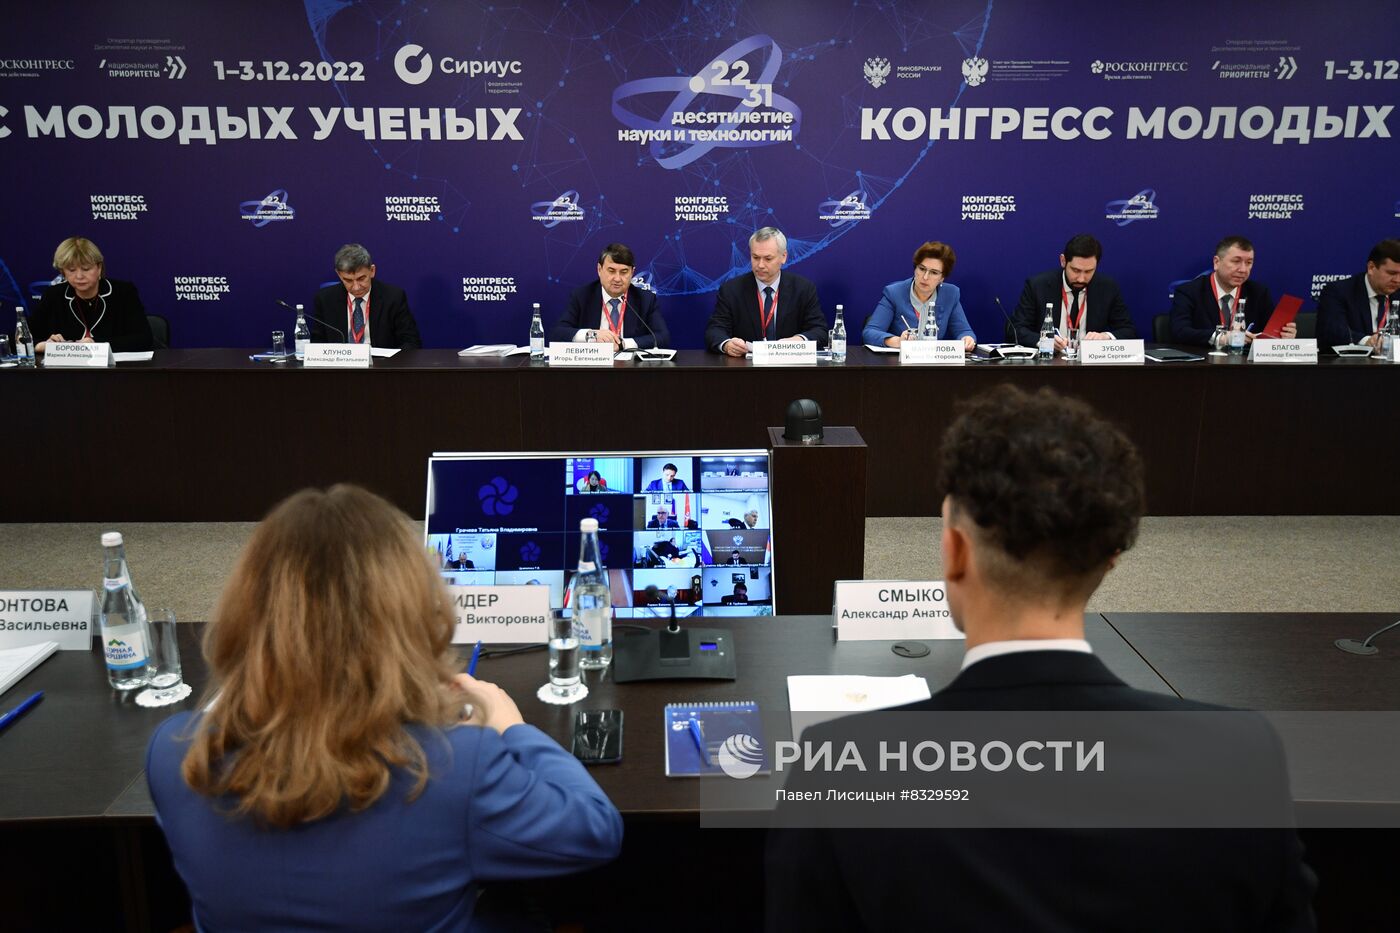 II КМУ-2022. Заседание комиссии Государственного Совета Российской Федерации по направлению "Наука"